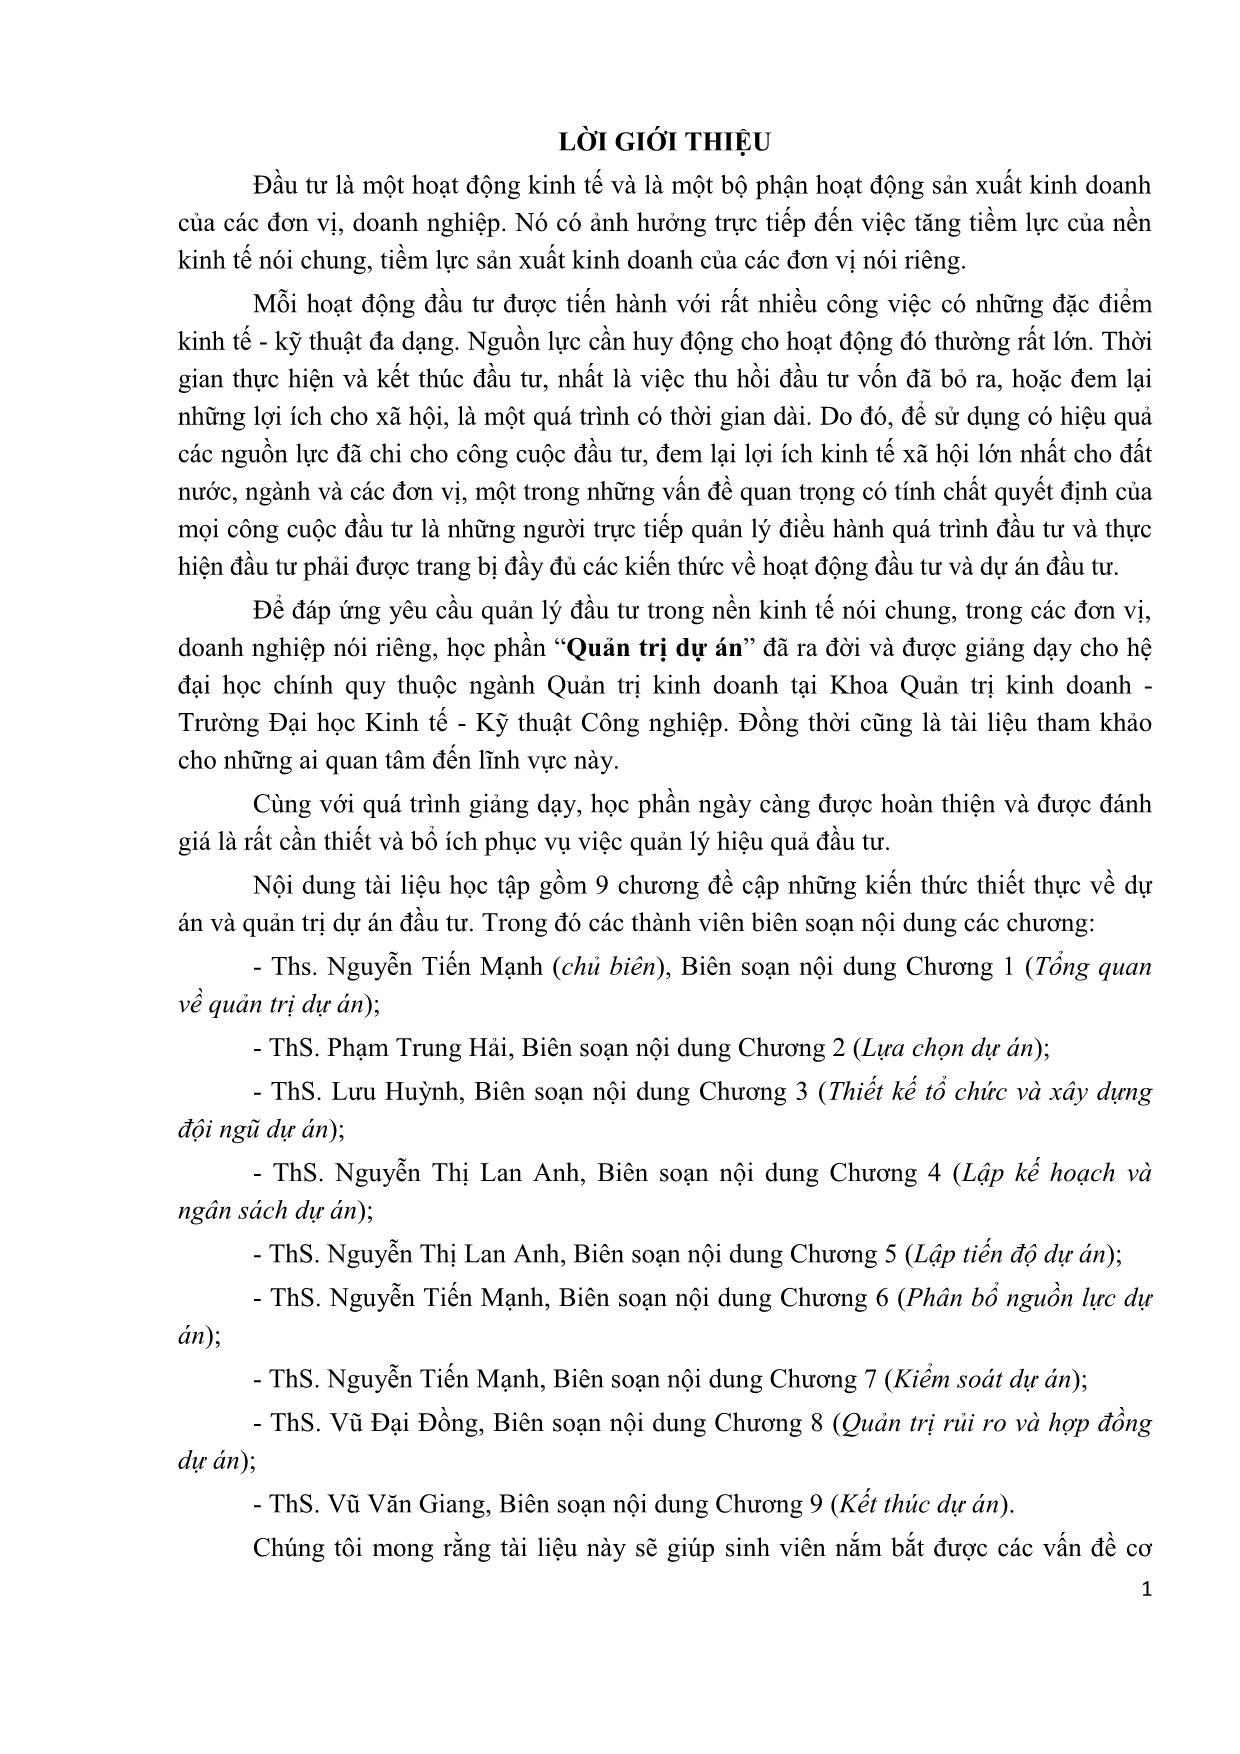 Tài liệu học tập Quản trị dự án (Phần 1) - Nguyễn Tiến Mạnh trang 7